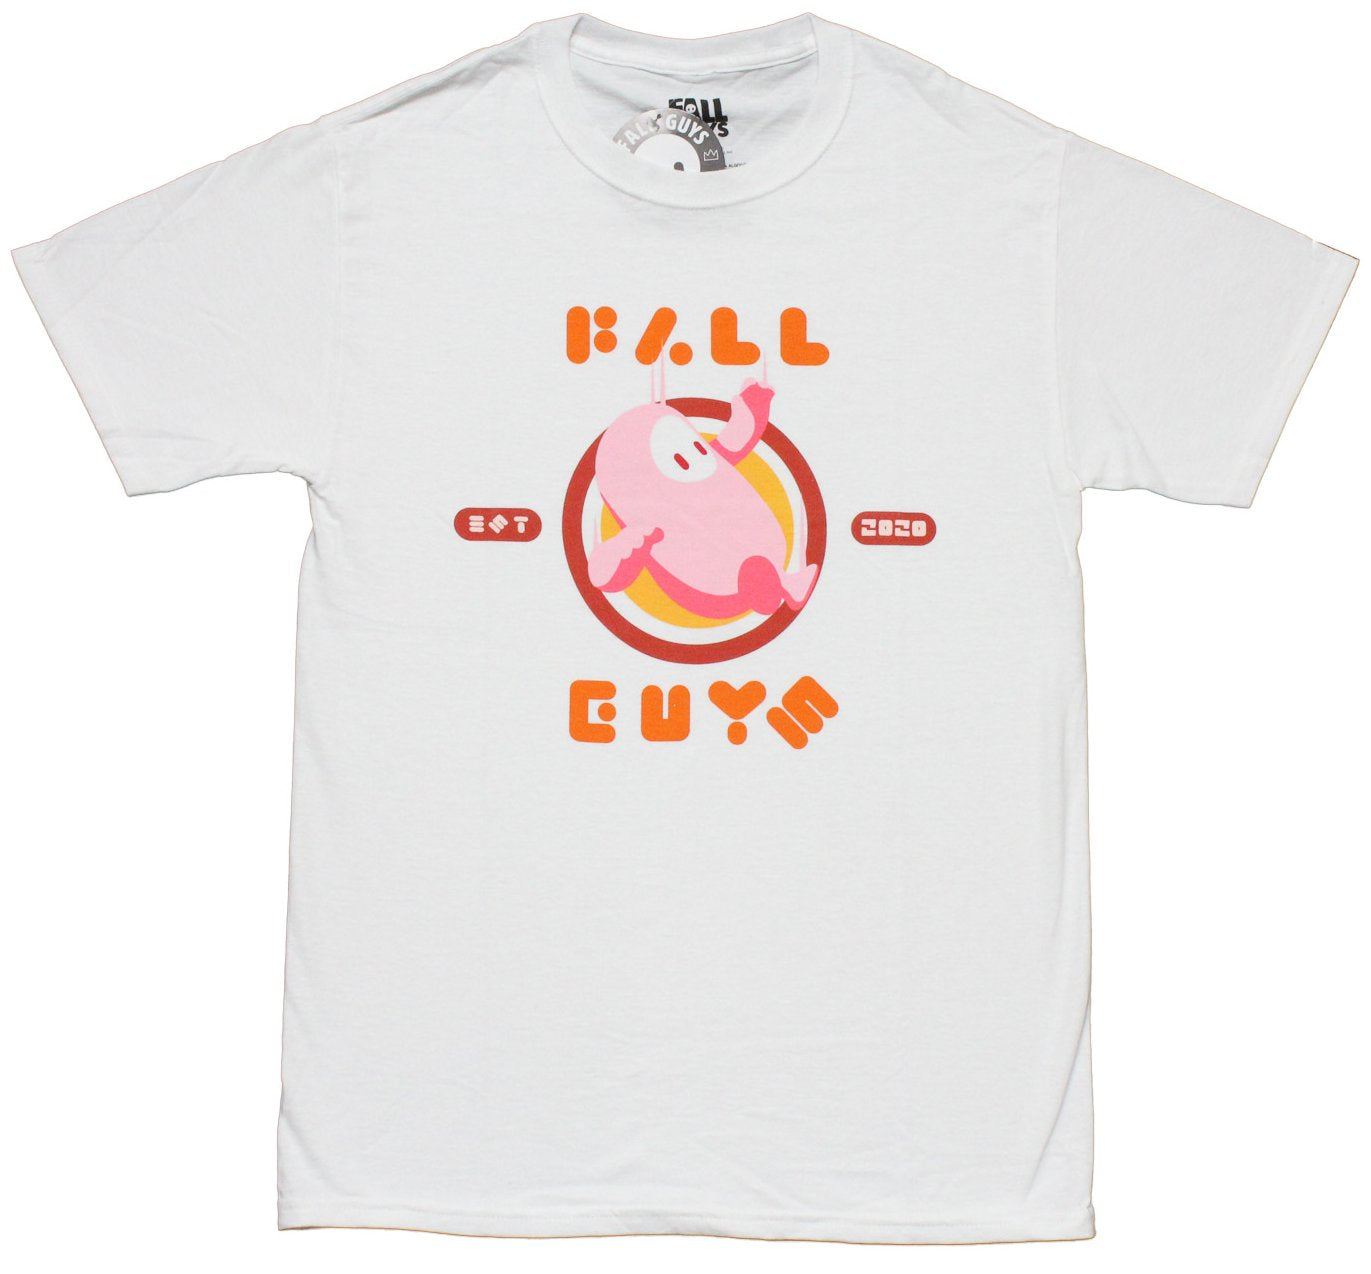 Fall Guys Mesn T-Shirt - Pink Guy Falling Circle Image